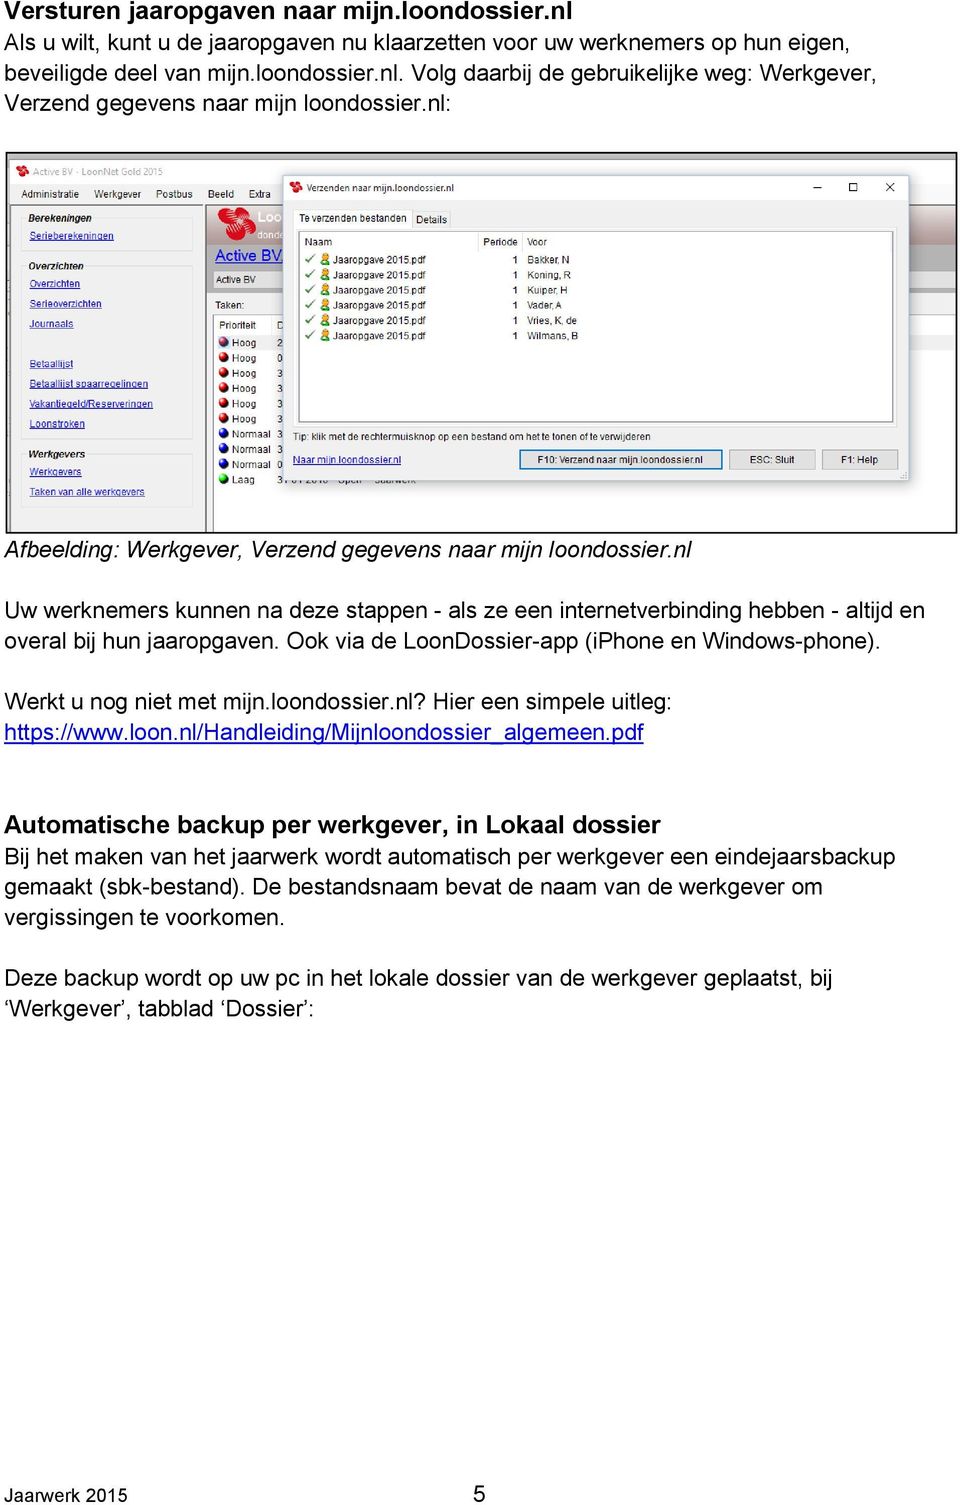 Ook via de LoonDossier-app (iphone en Windows-phone). Werkt u nog niet met mijn.loondossier.nl? Hier een simpele uitleg: https://www.loon.nl/handleiding/mijnloondossier_algemeen.